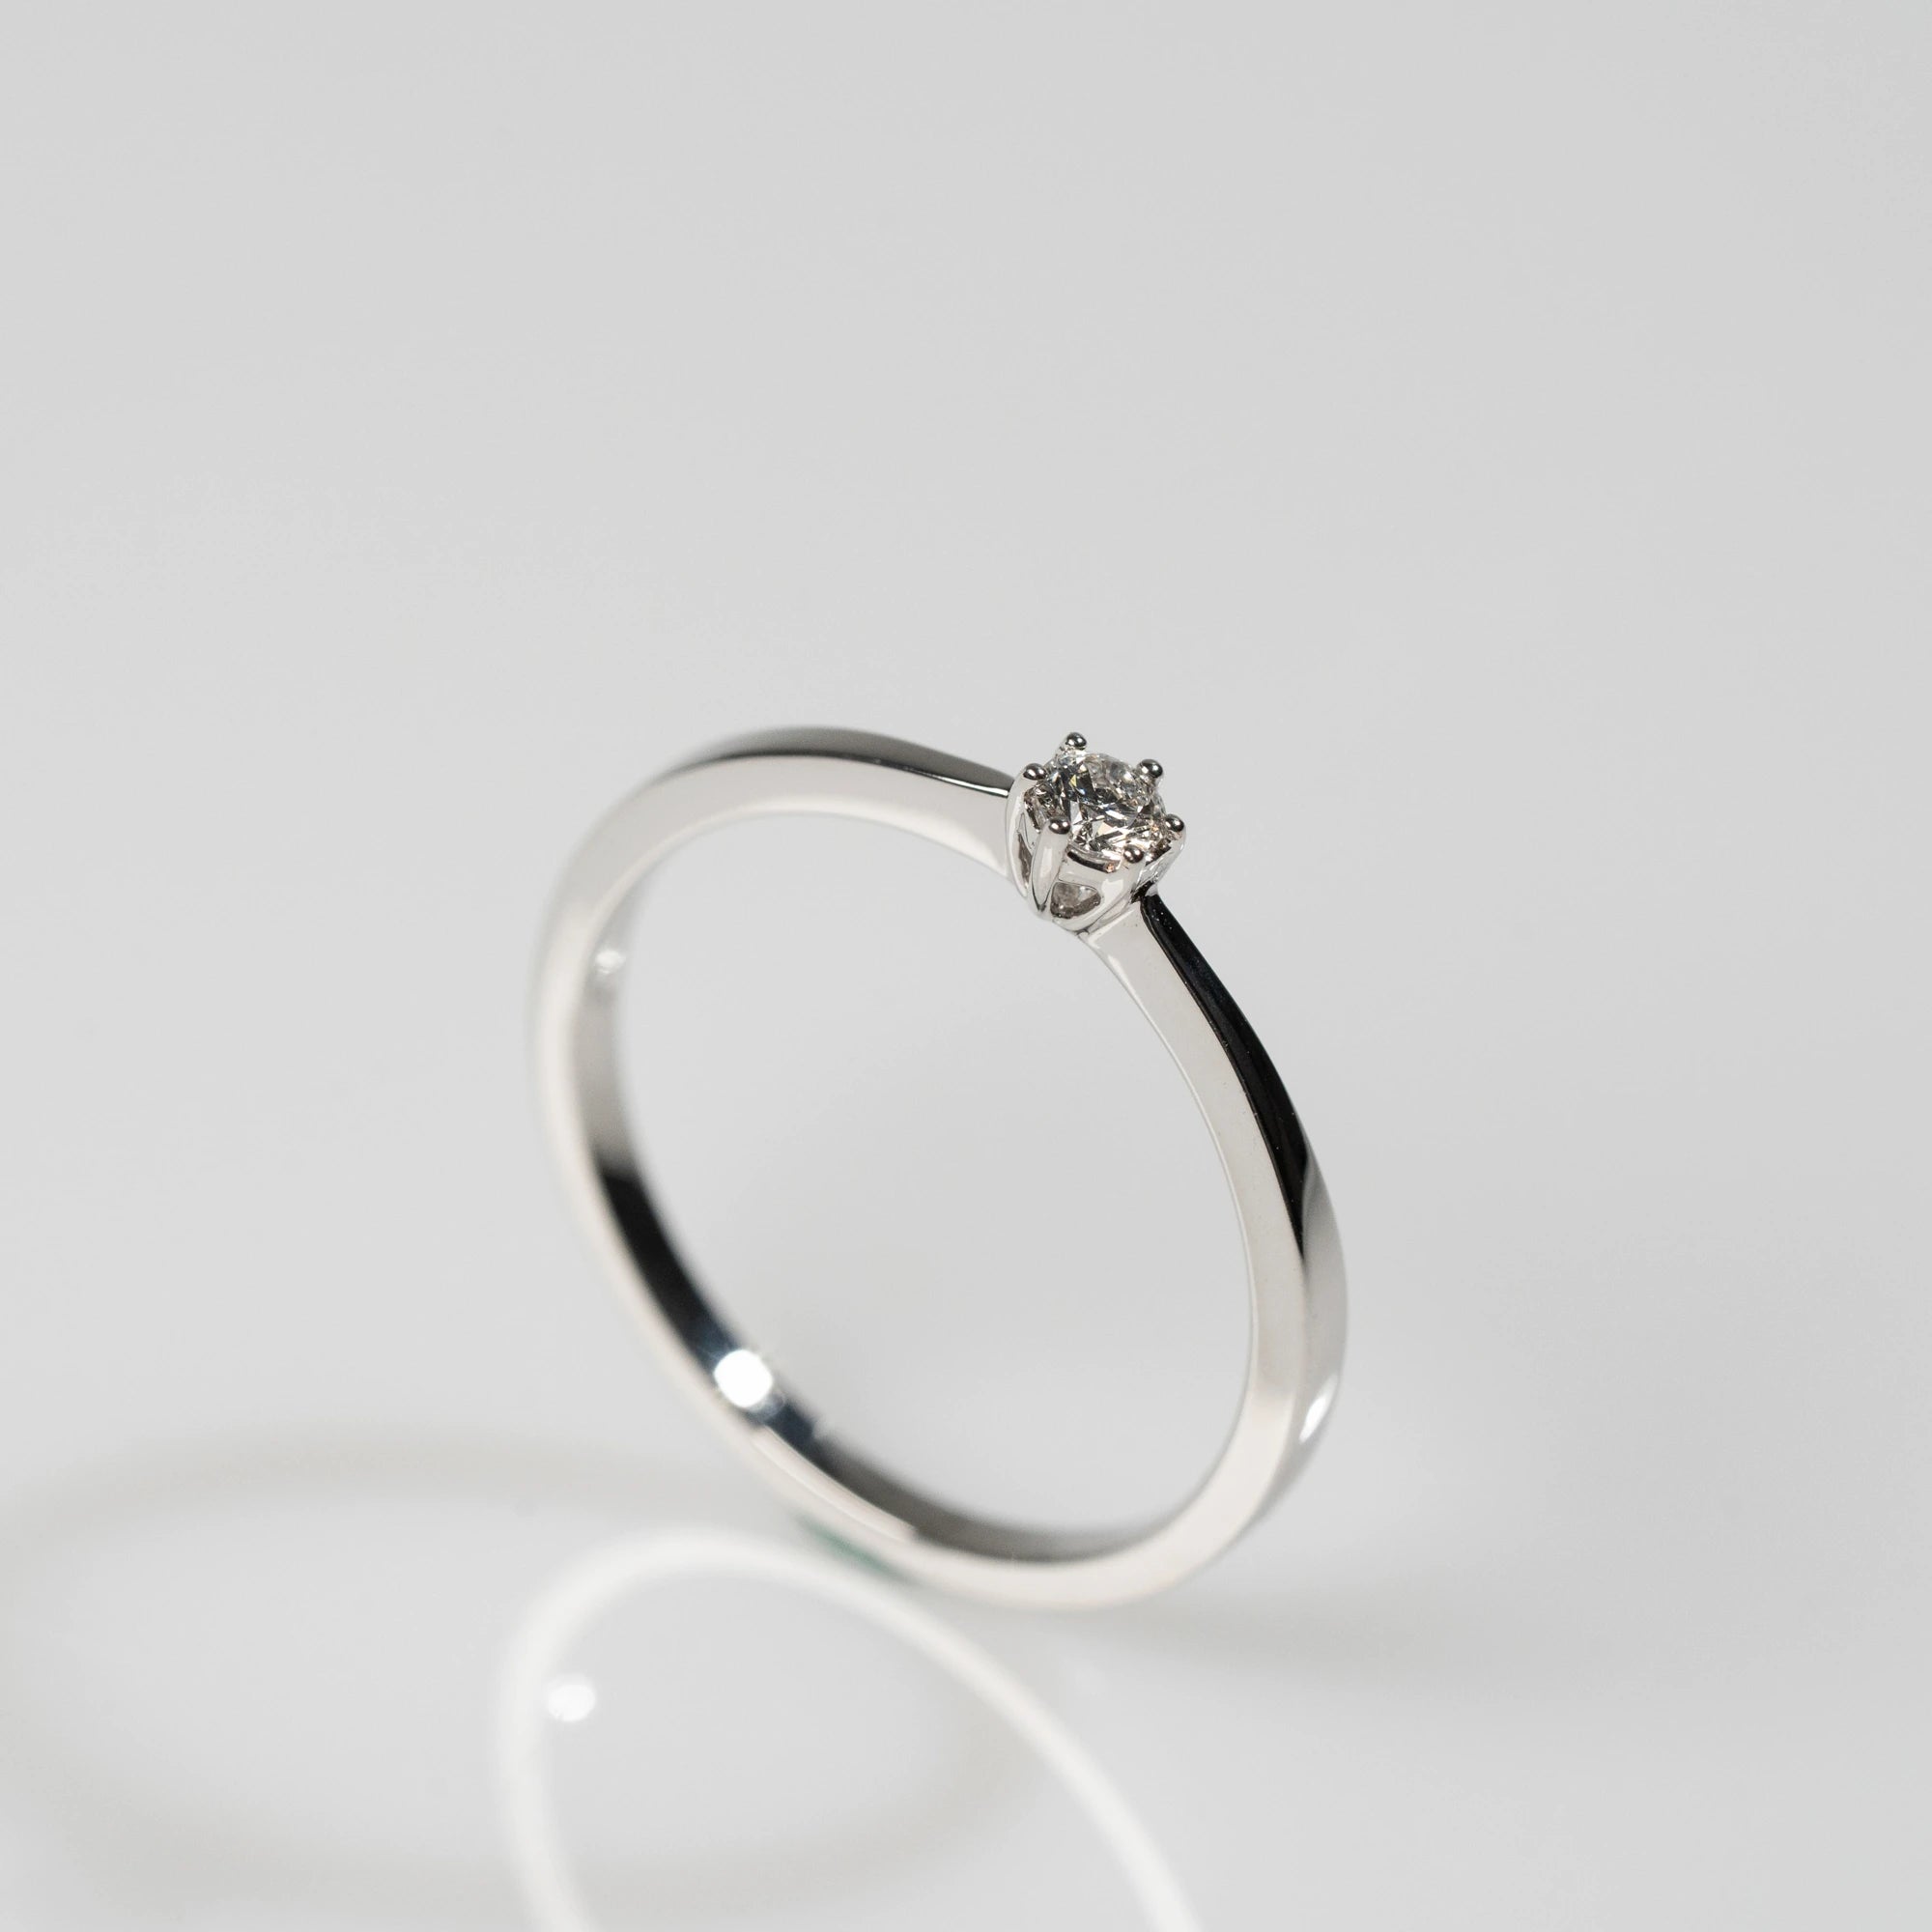 Detailaufnahme des Weißgold-Verlobungsrings "Promise" aus der Schmuckatelier Lang Collection mit einem in einer 6er Kappe gefassten Diamanten